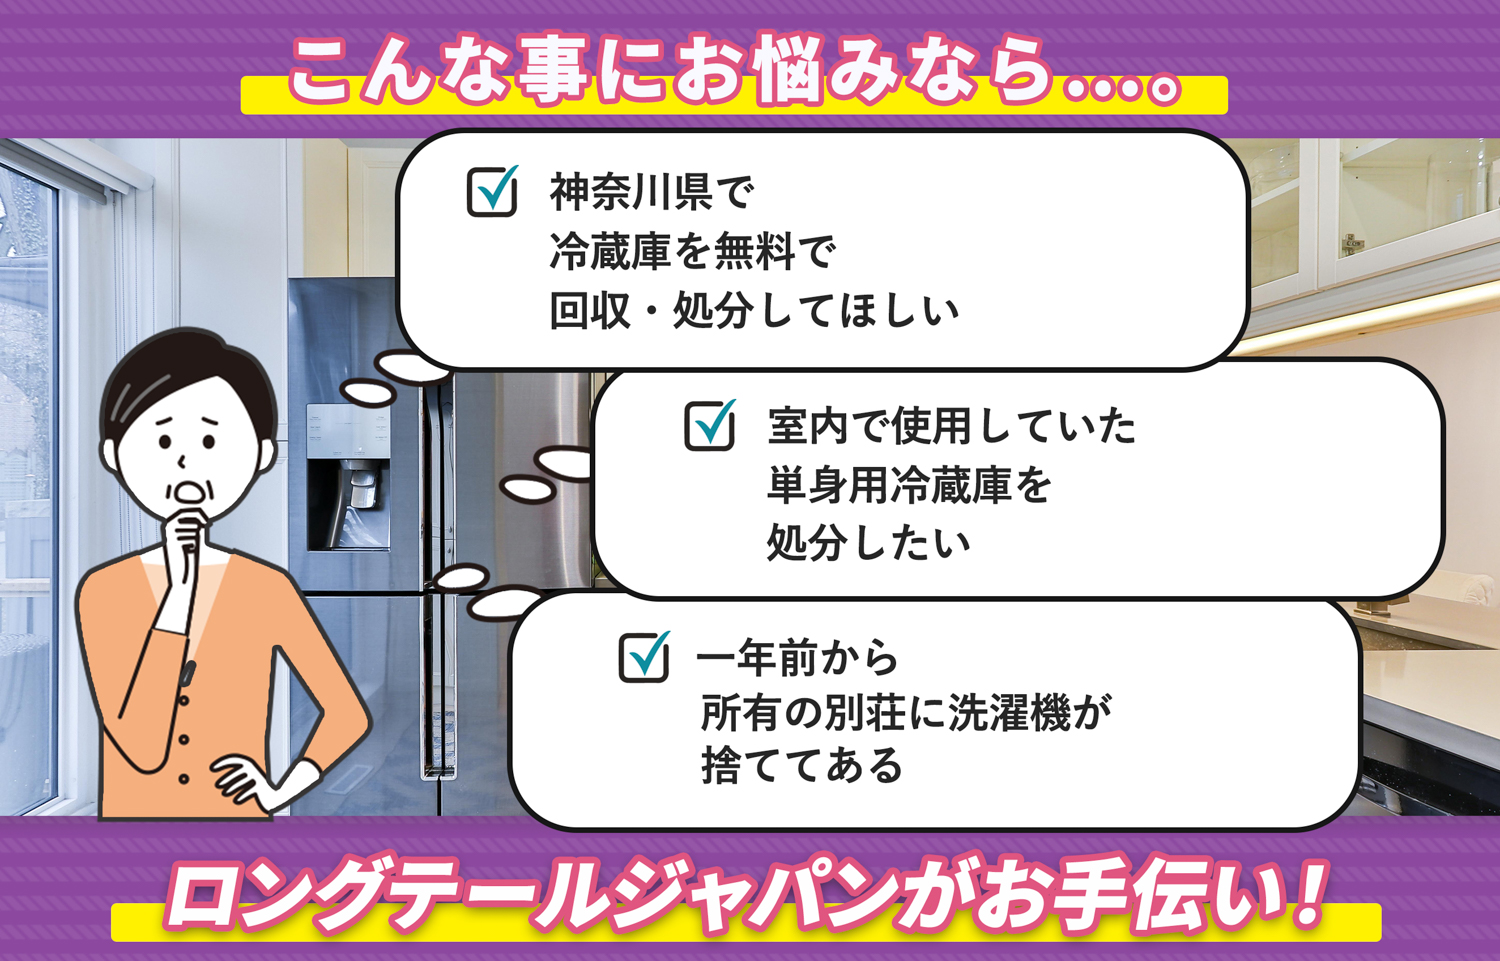 神奈川県でこんな冷蔵庫の処分にお困りでしたら冷蔵庫無料回収処分隊がお手伝いします。